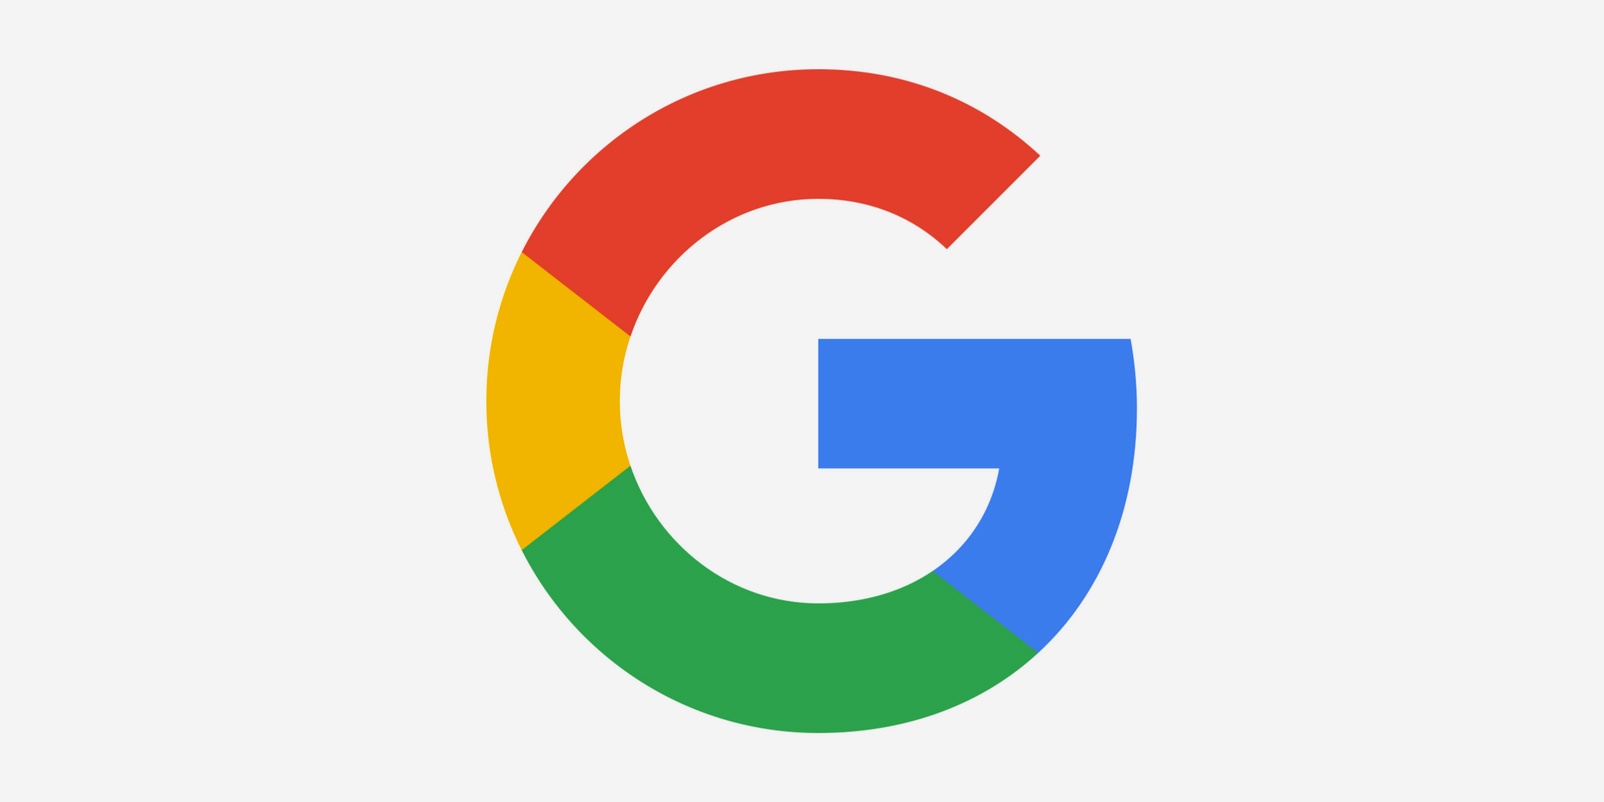 google - ung, men fortsatt kjent logo